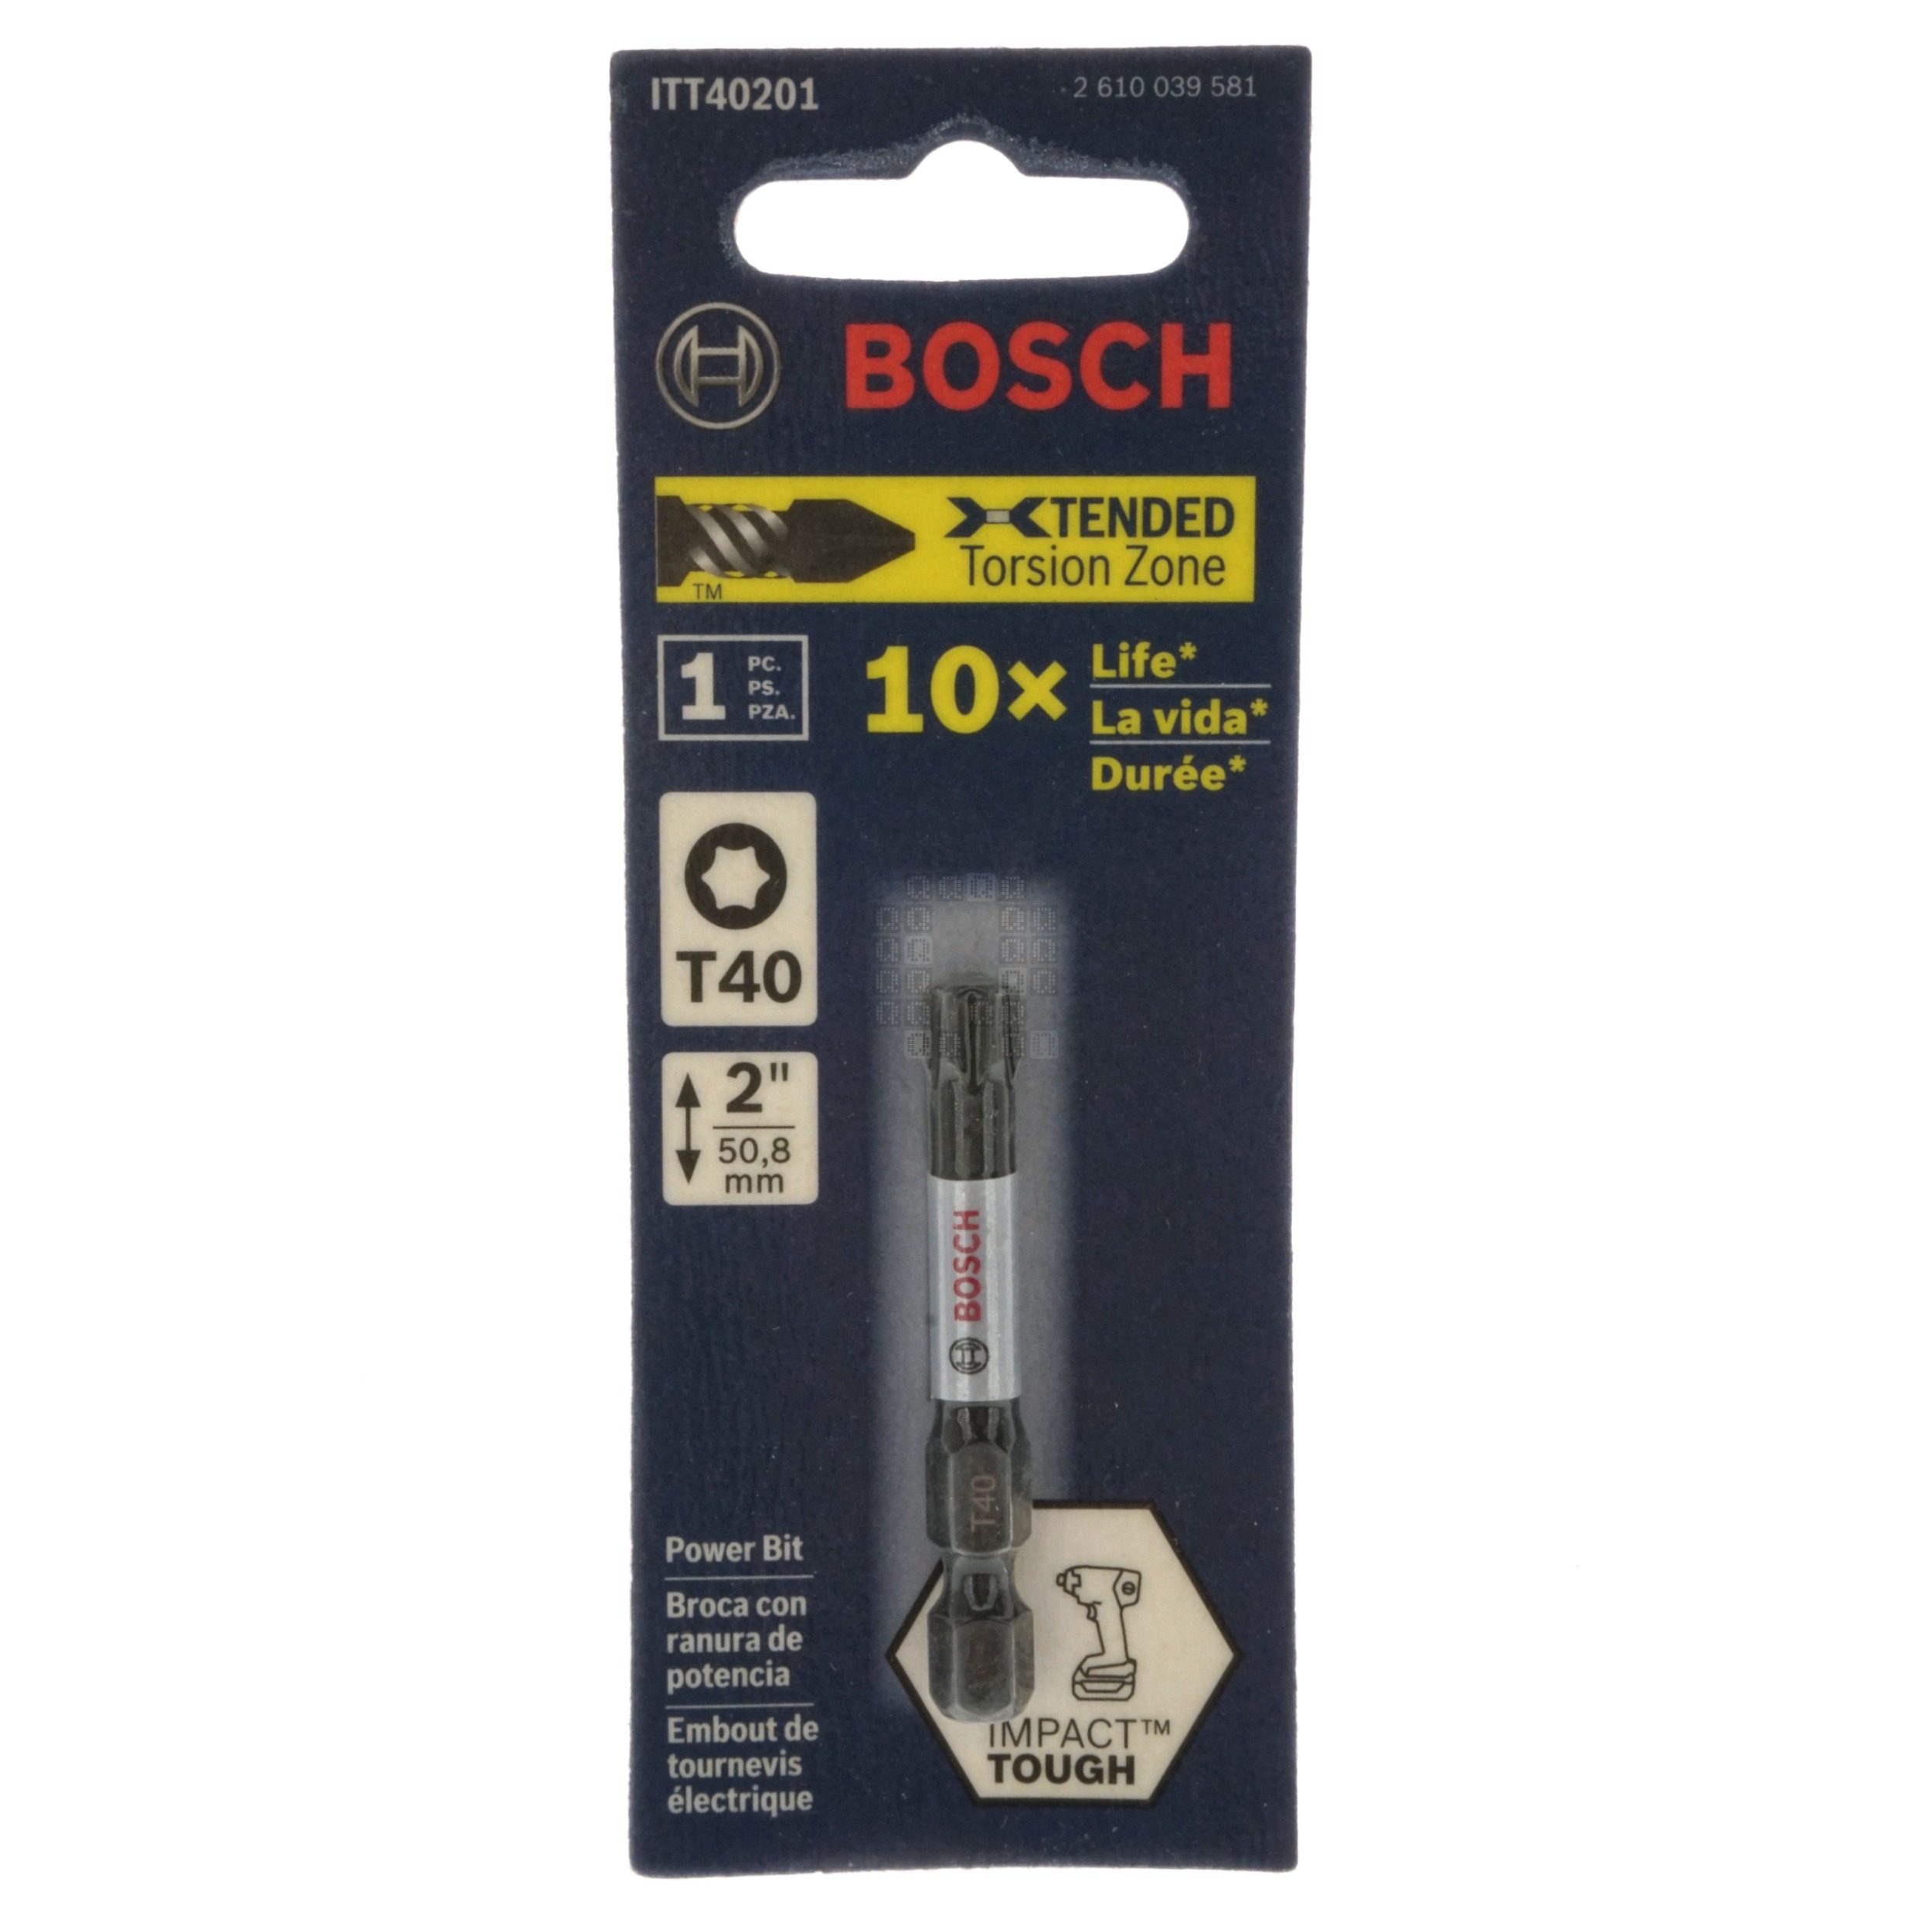 Bosch 2610039581 ITT40201 Impact Tough, T40 TORX Power Bit, 2" Length